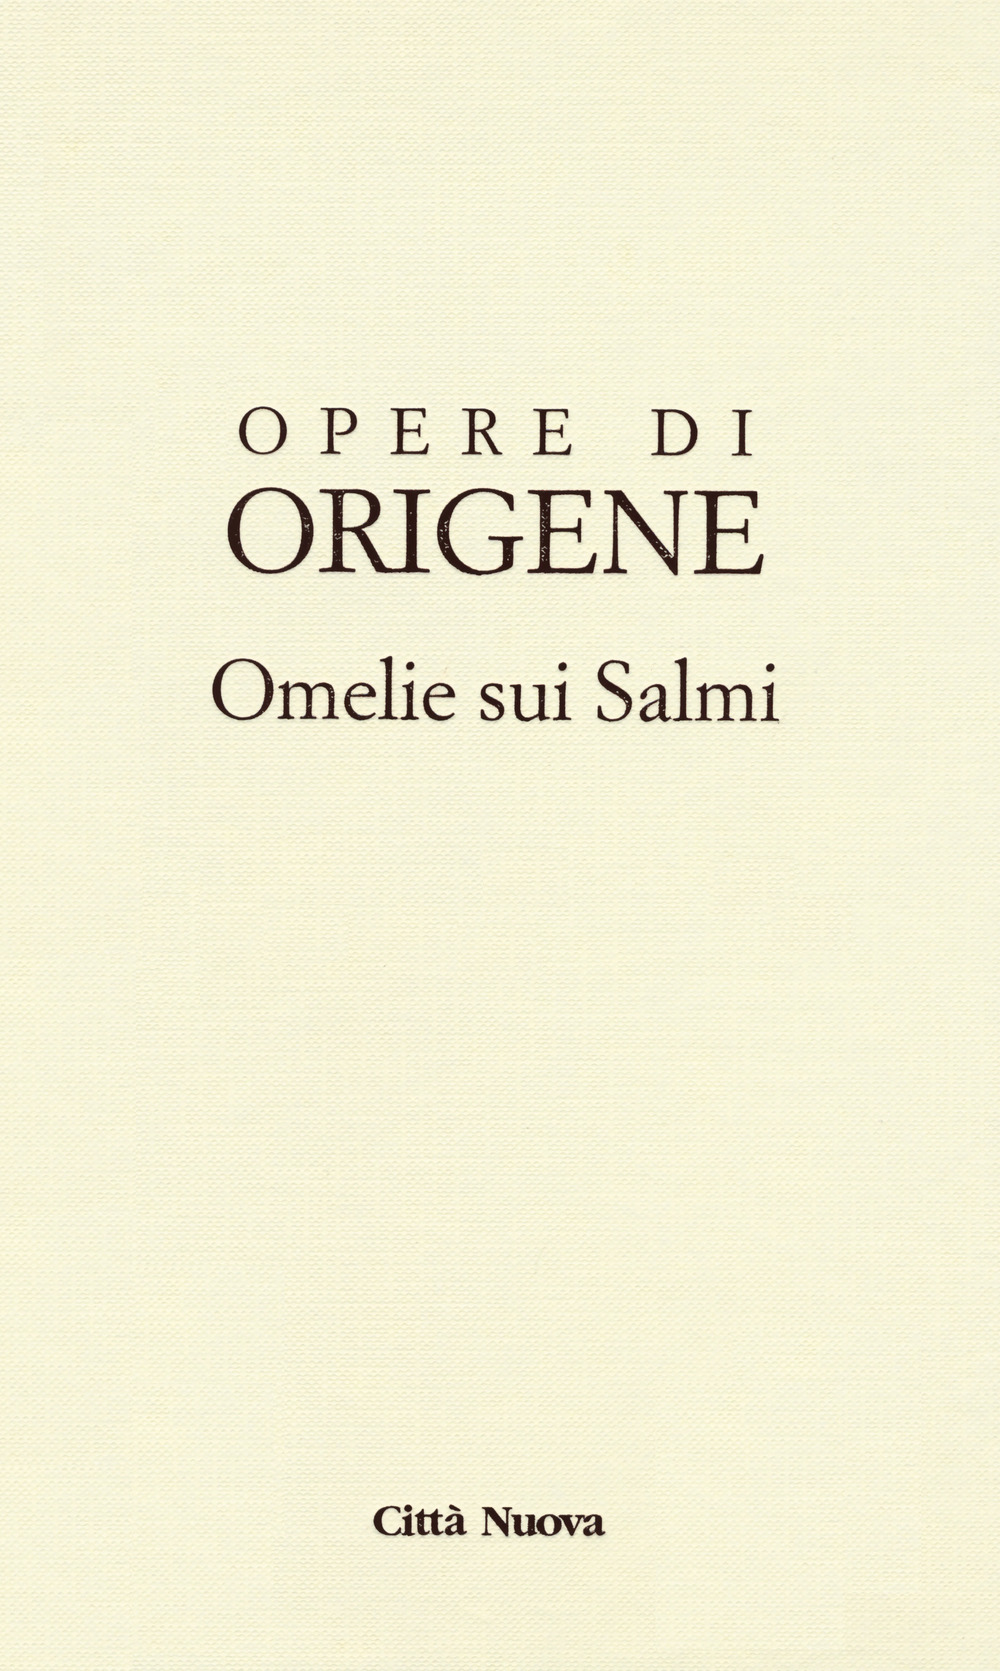 Opere di Origene. Testo greco antico a fronte. Vol. 9/3b: Omelie sui Salmi 2